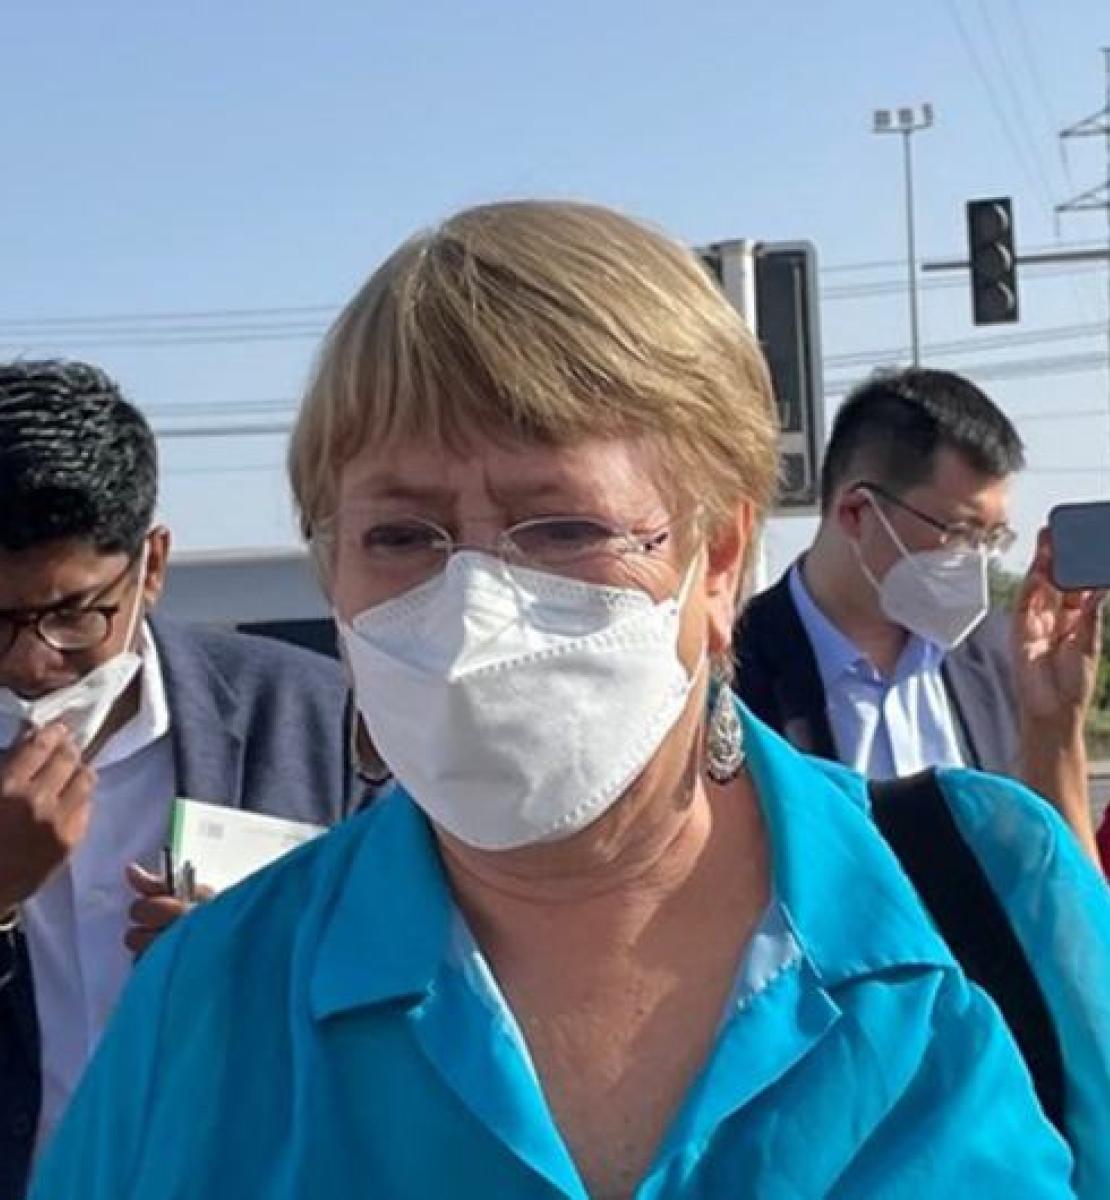 La Alta Comisionada Michelle Bachelet durante su visita a China, en Ürümqi, Región Autónoma Uigur de Xinjiang, China.